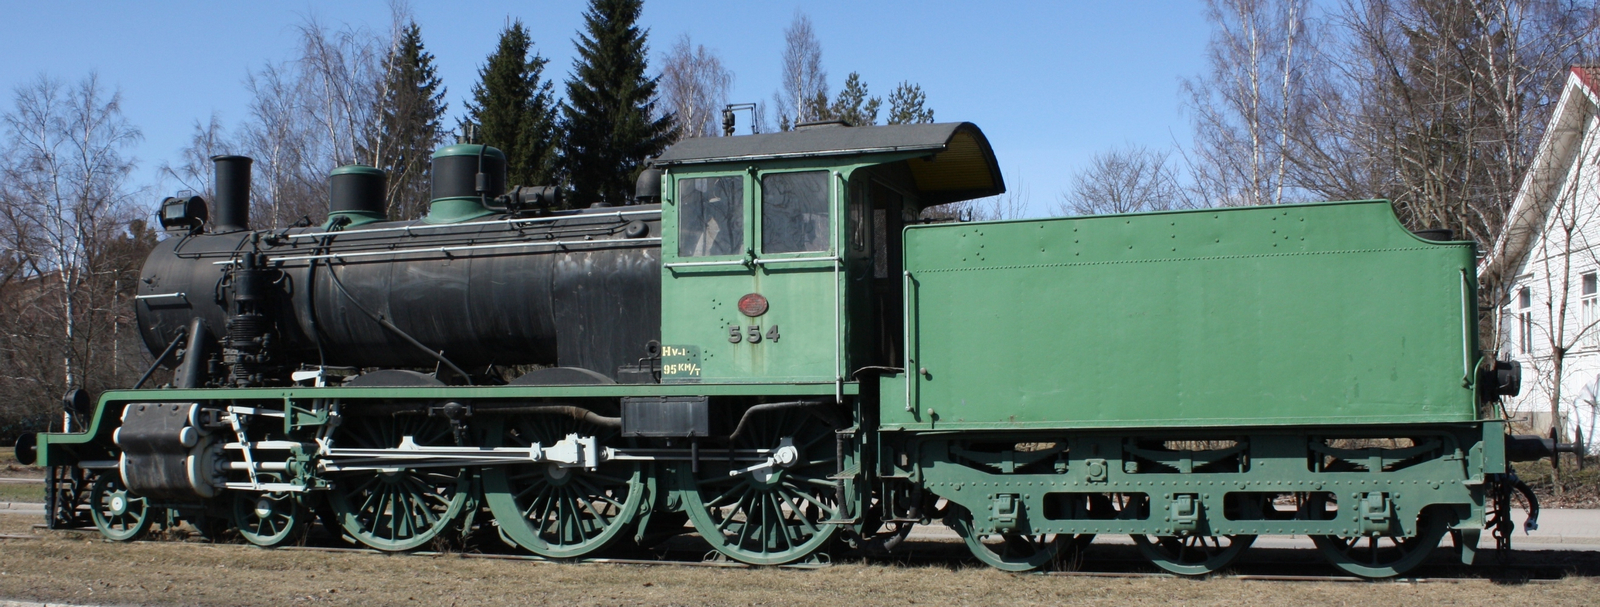 No. 554 on display near Riihimäki Station